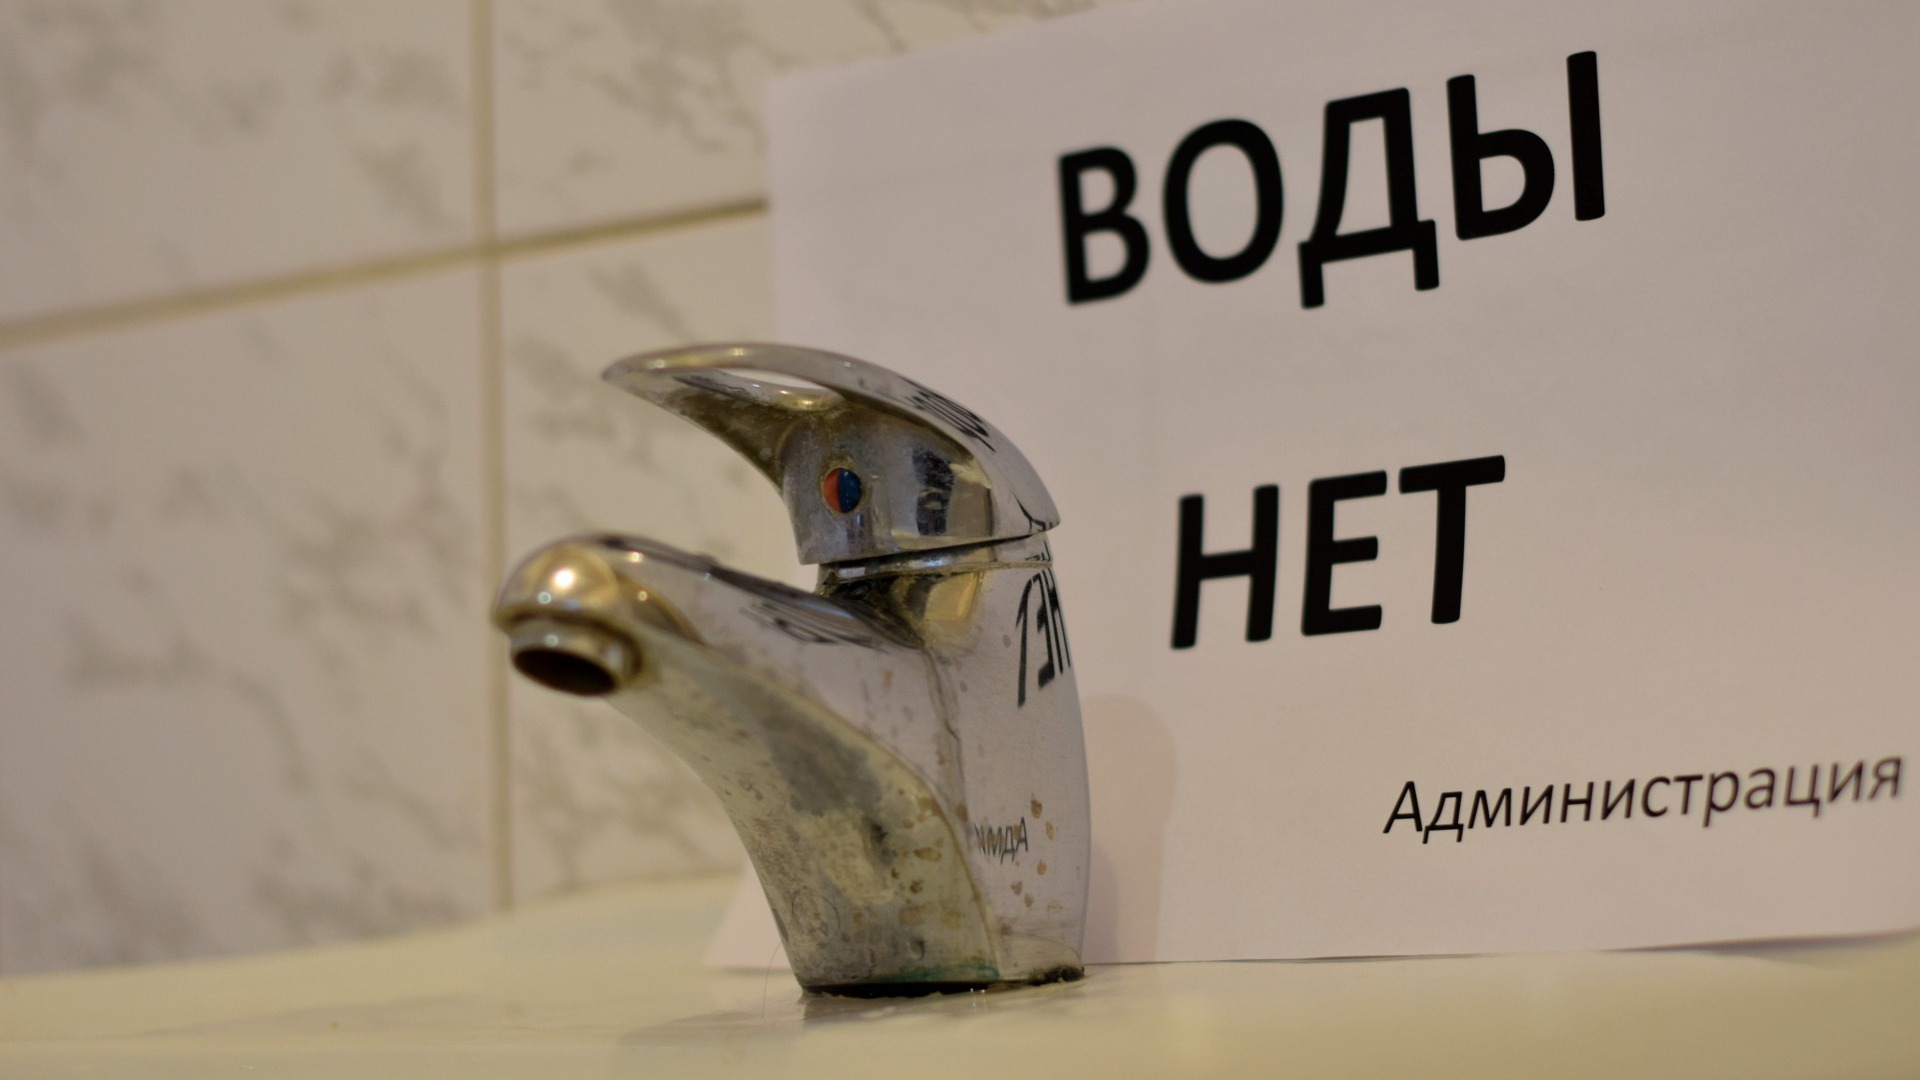 Наполняйте тазики: сотни жителей Владивостока останутся без воды — адреса, даты